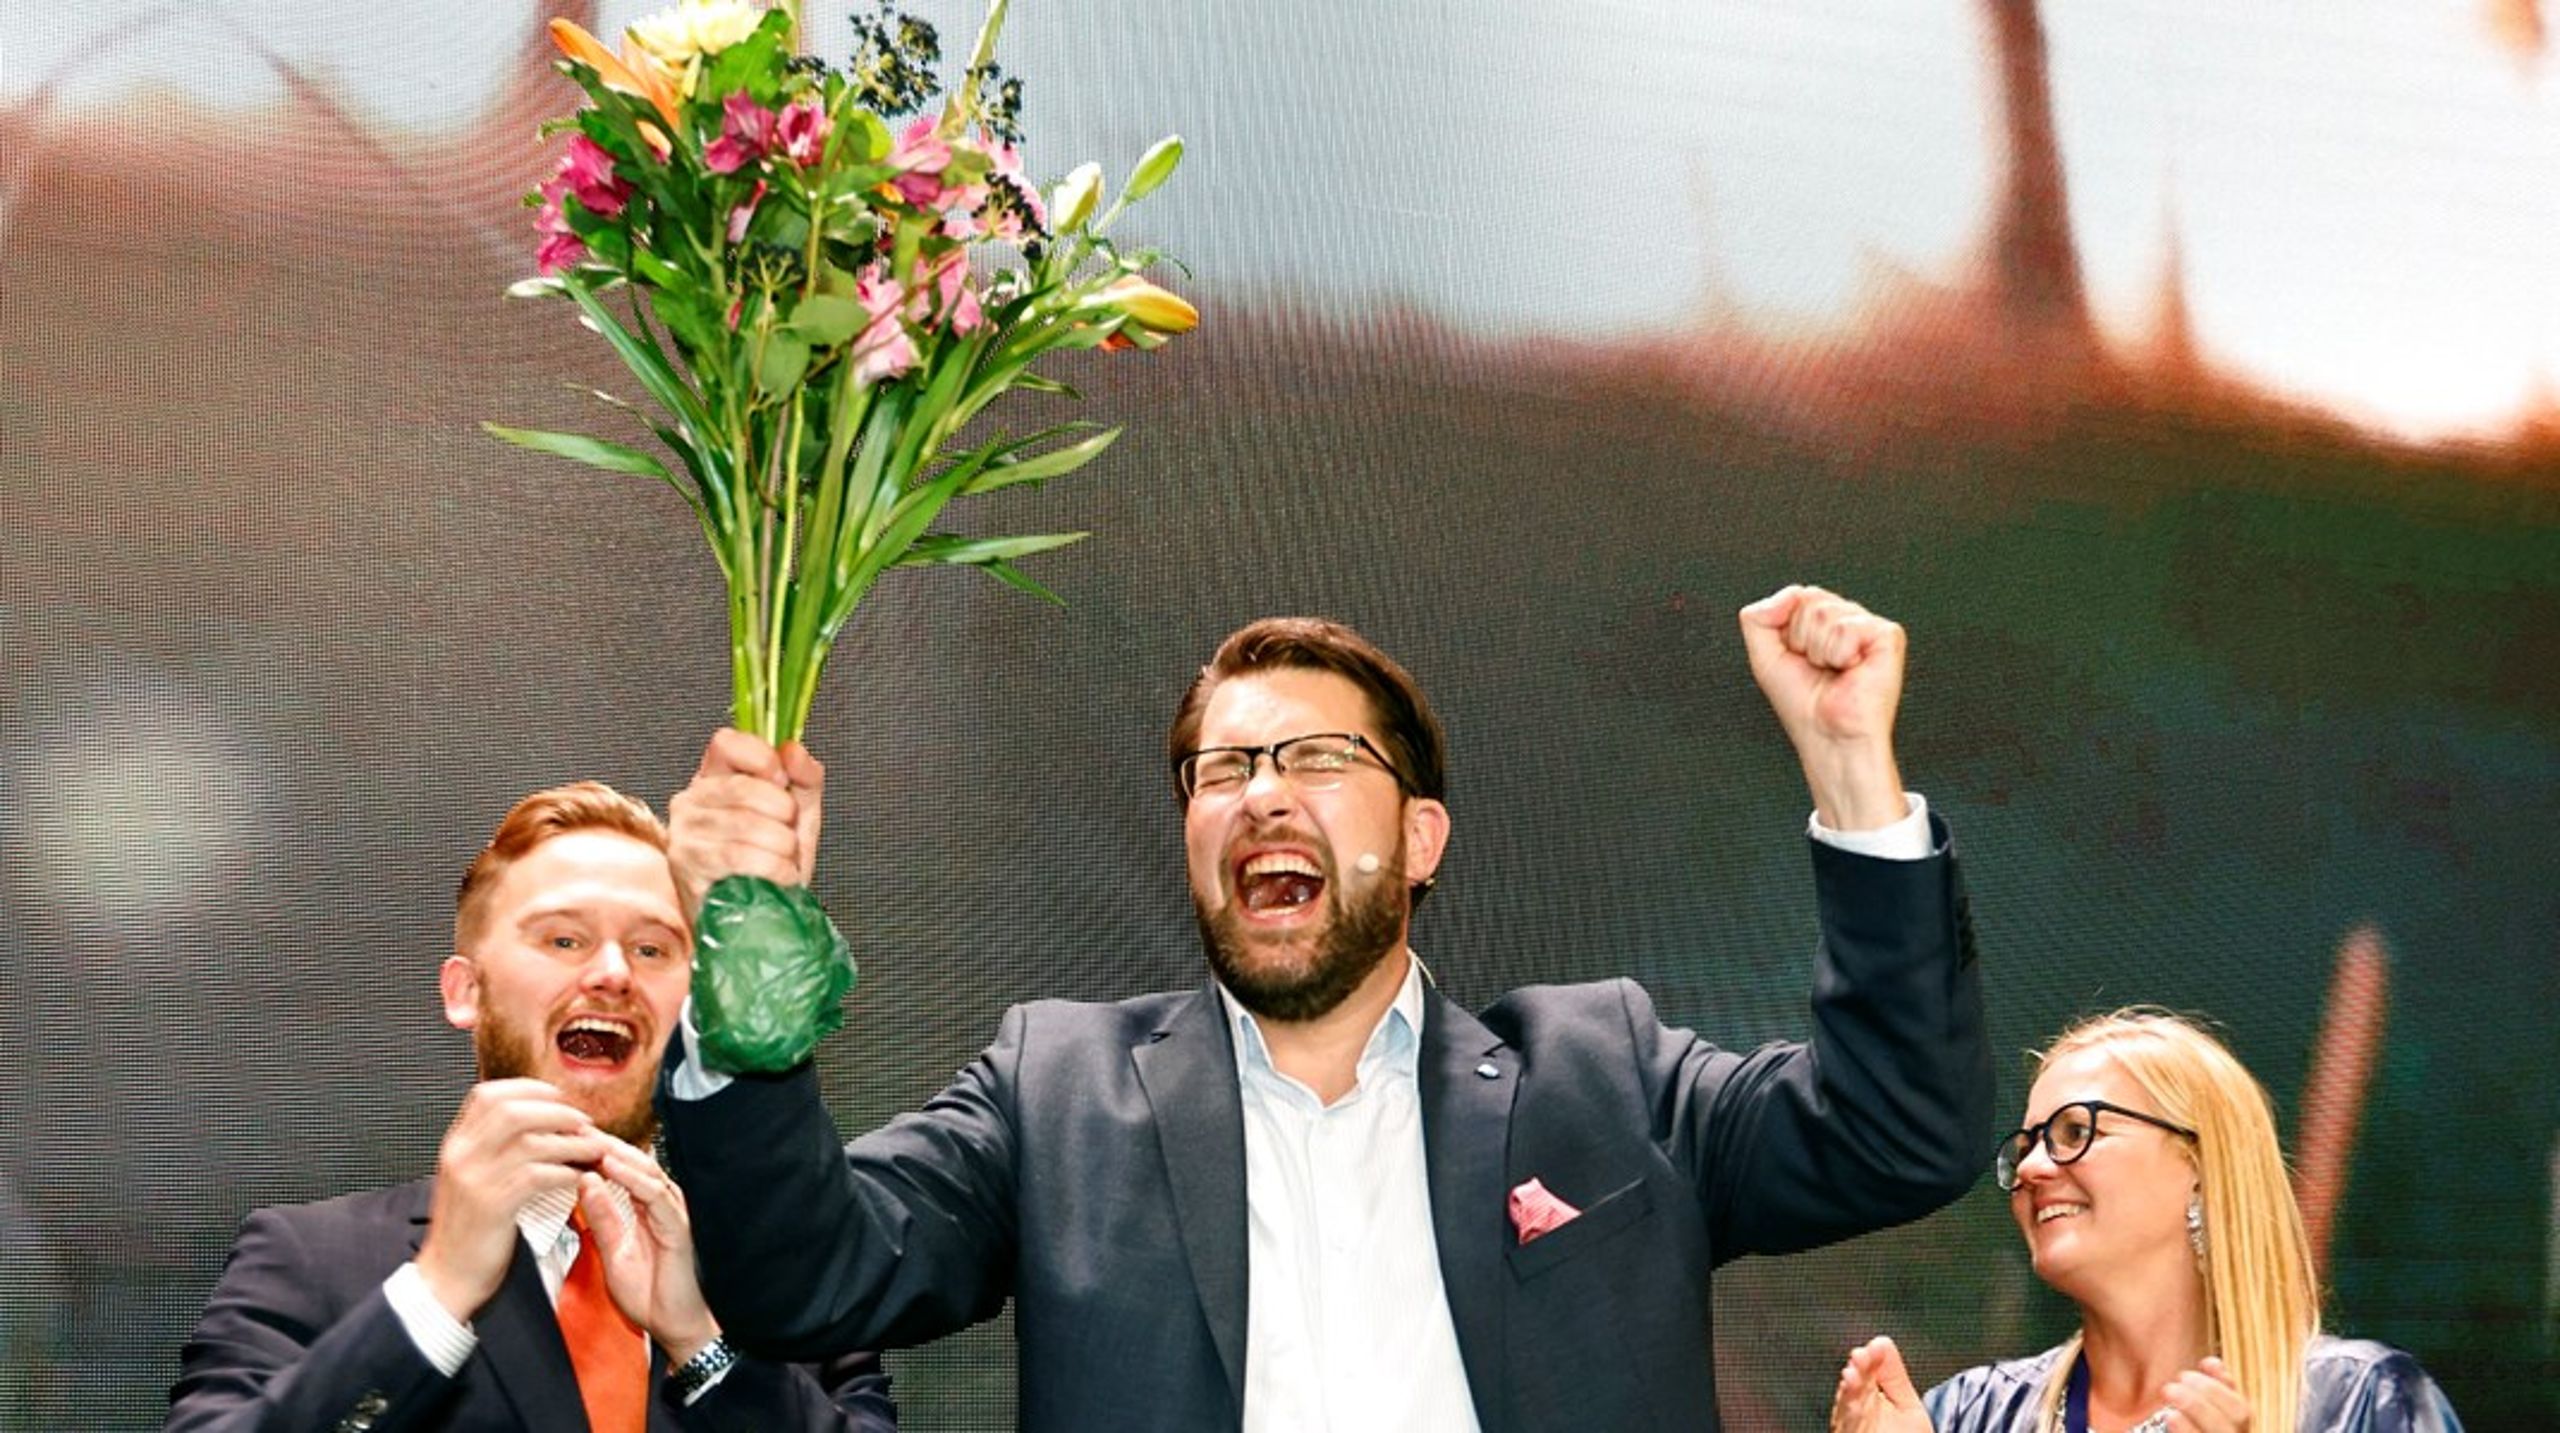 Jimmie Åkesson og Sverigedemokraterne er stormet frem ved søndagens svenske valg og står nu til at blive landets næststørste parti med 20,7 procent af stemmerne.